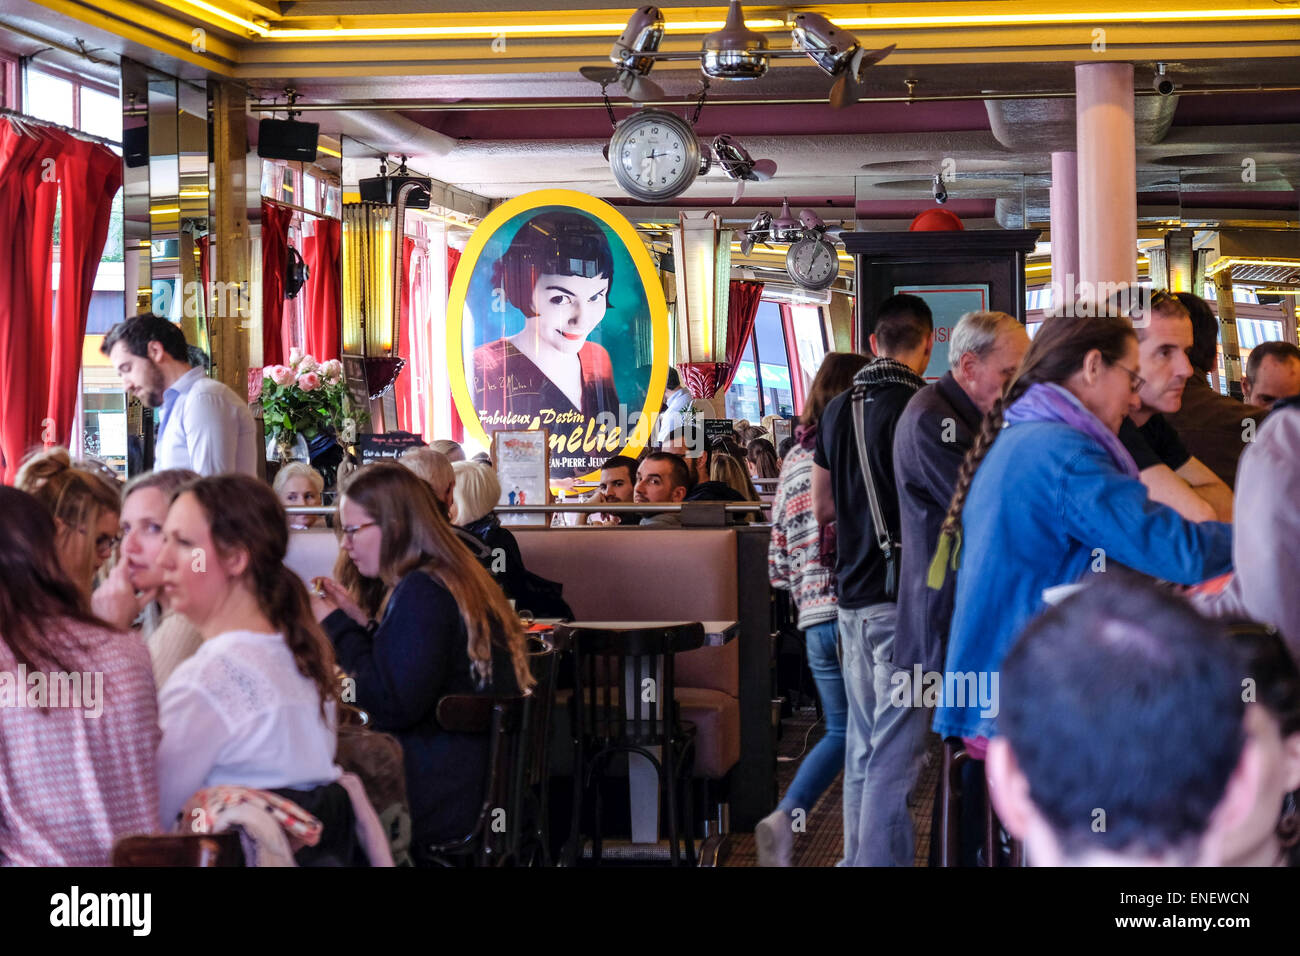 Francia Parigi - Il Café des 2 Moulins (francese per "due mulini a vento ") è una caffetteria nella zona di Montmartre di Parigi, situato in corrispondenza della giunzione di Rue Lepic e Rue Cauchois. Il café ha acquisito una notevole fama dopo la sua apparizione nel film 2001, Amélie, in cui è il luogo di lavoro del personaggio del titolo. Da allora è diventato una popolare destinazione turistica. Foto Stock